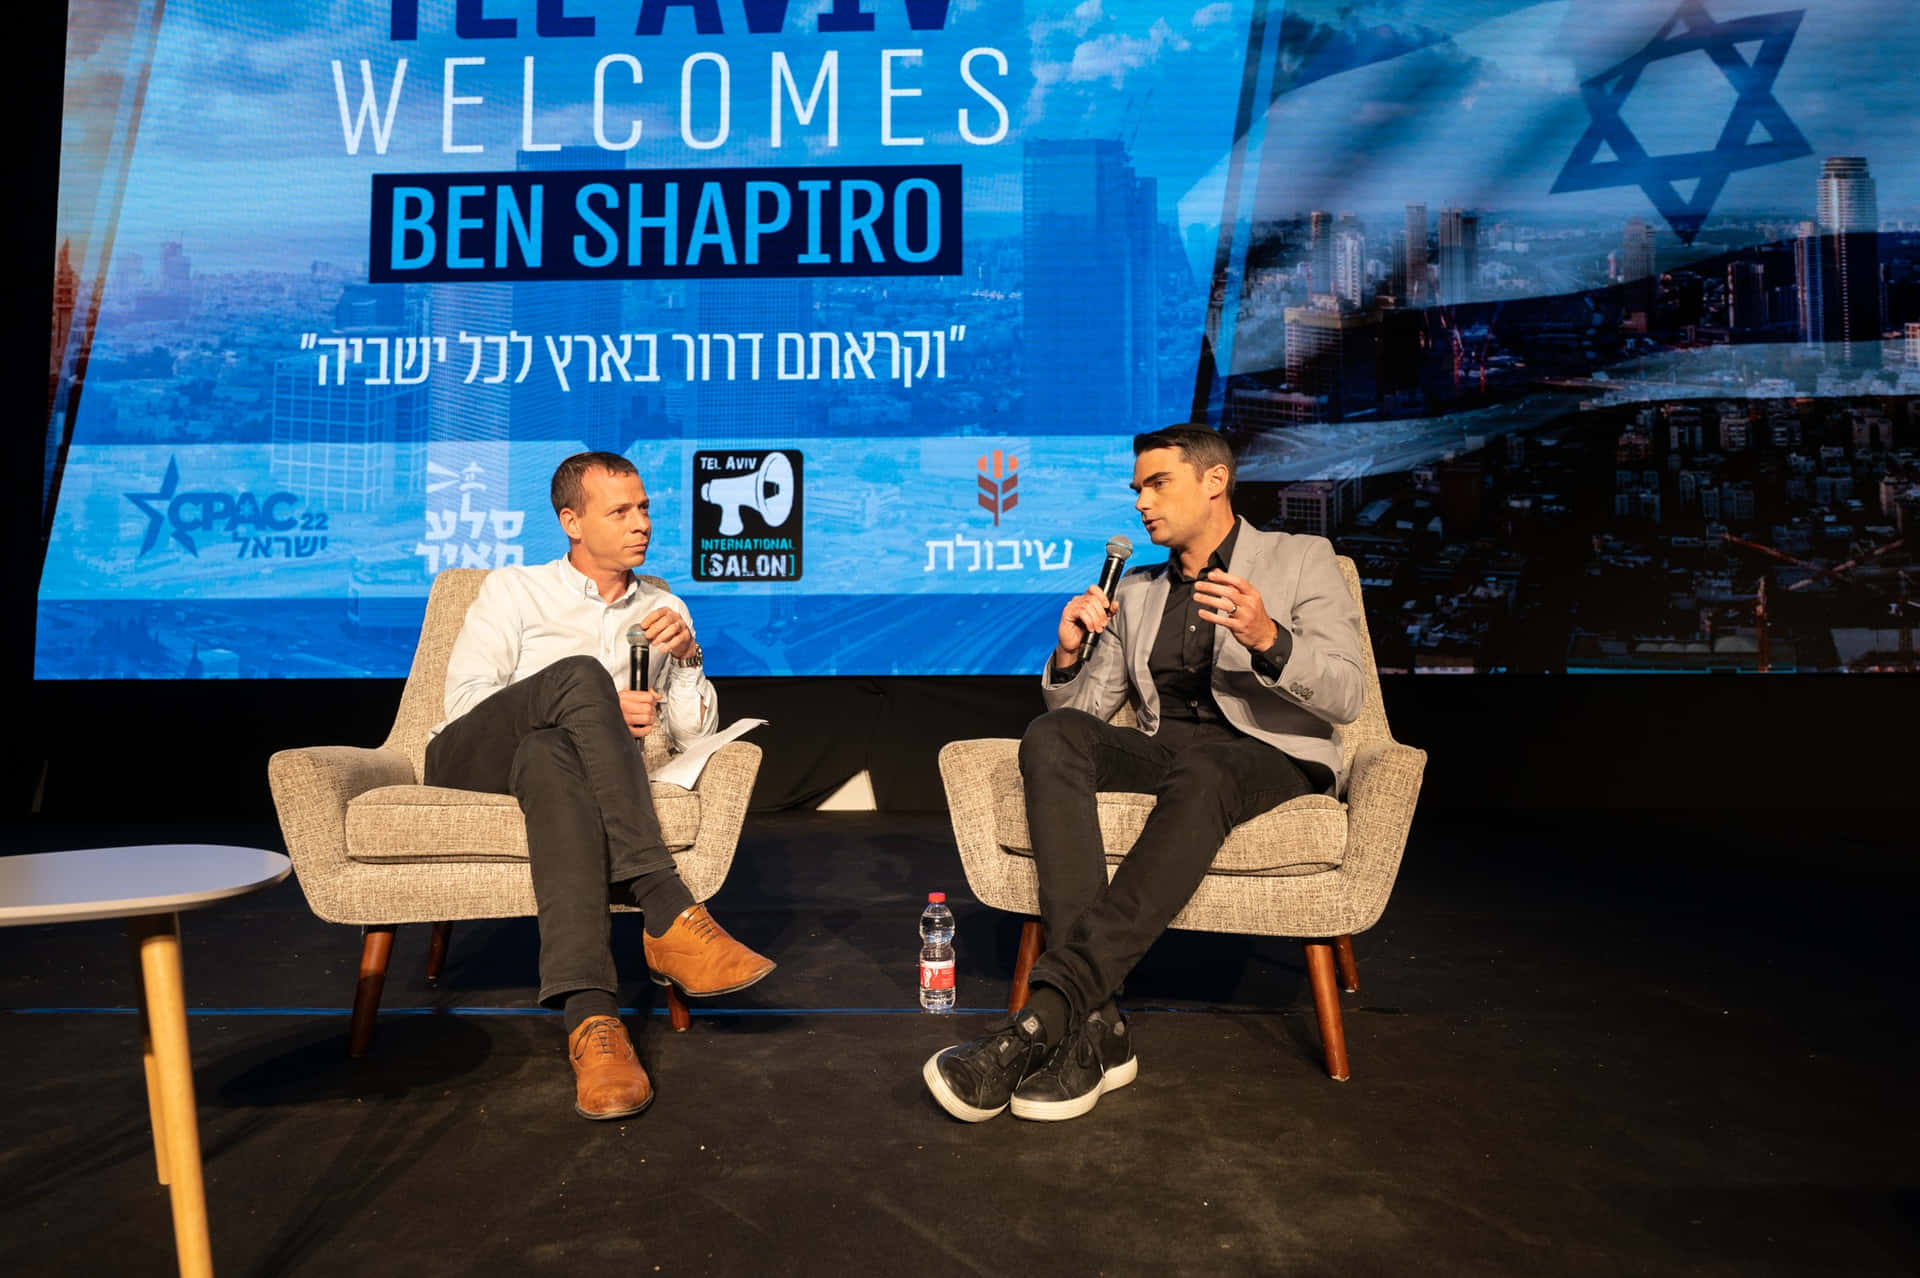 Benshapiro Ist Ein Amerikanischer Autor Und Podcast-host, Der Zu Einer Einflussreichen Stimme In Konservativen Und Rechtsgerichteten Kreisen Geworden Ist.